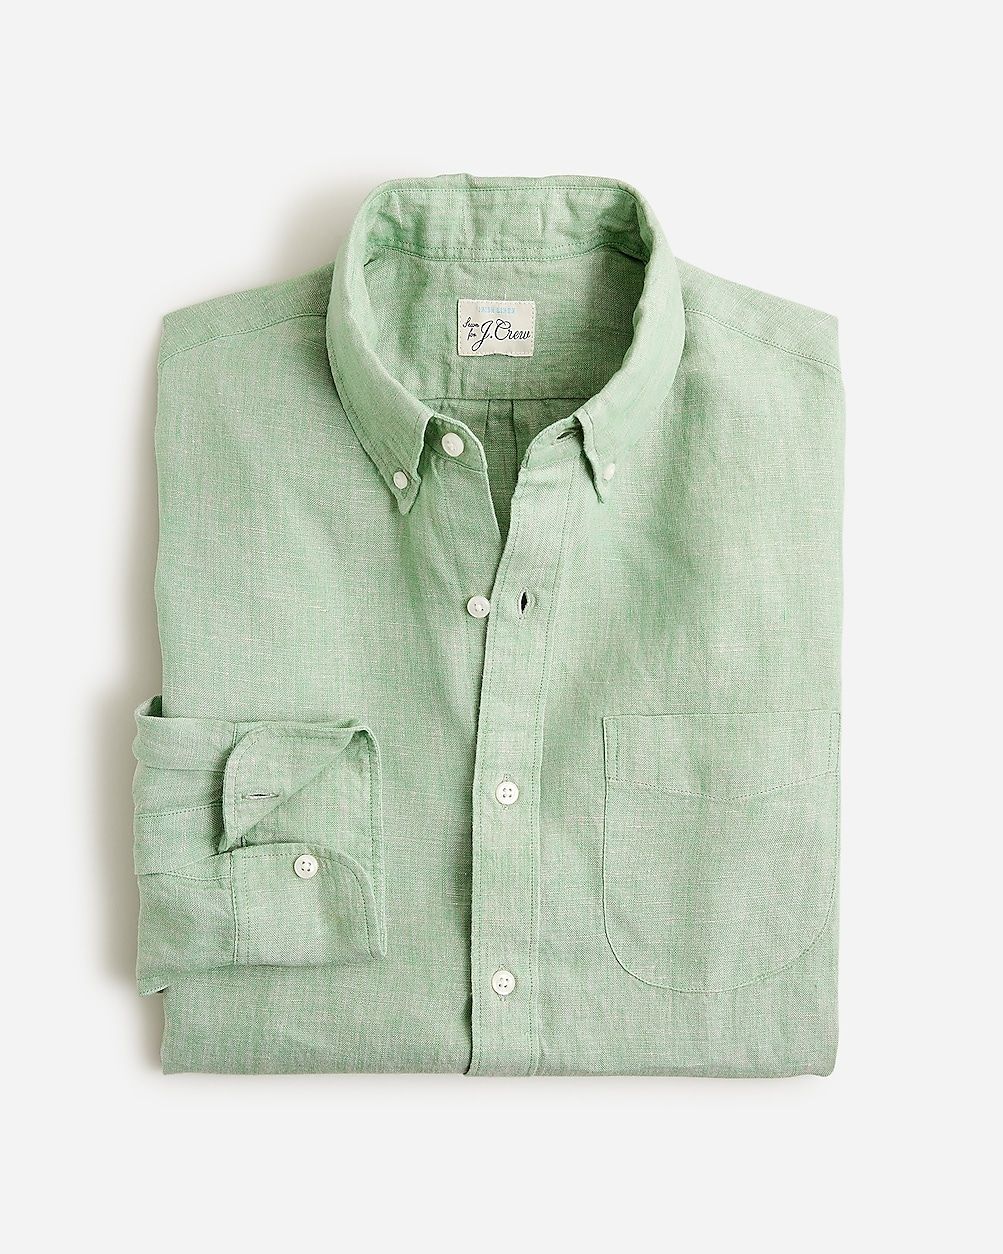 Baird McNutt Irish linen shirt | J.Crew US